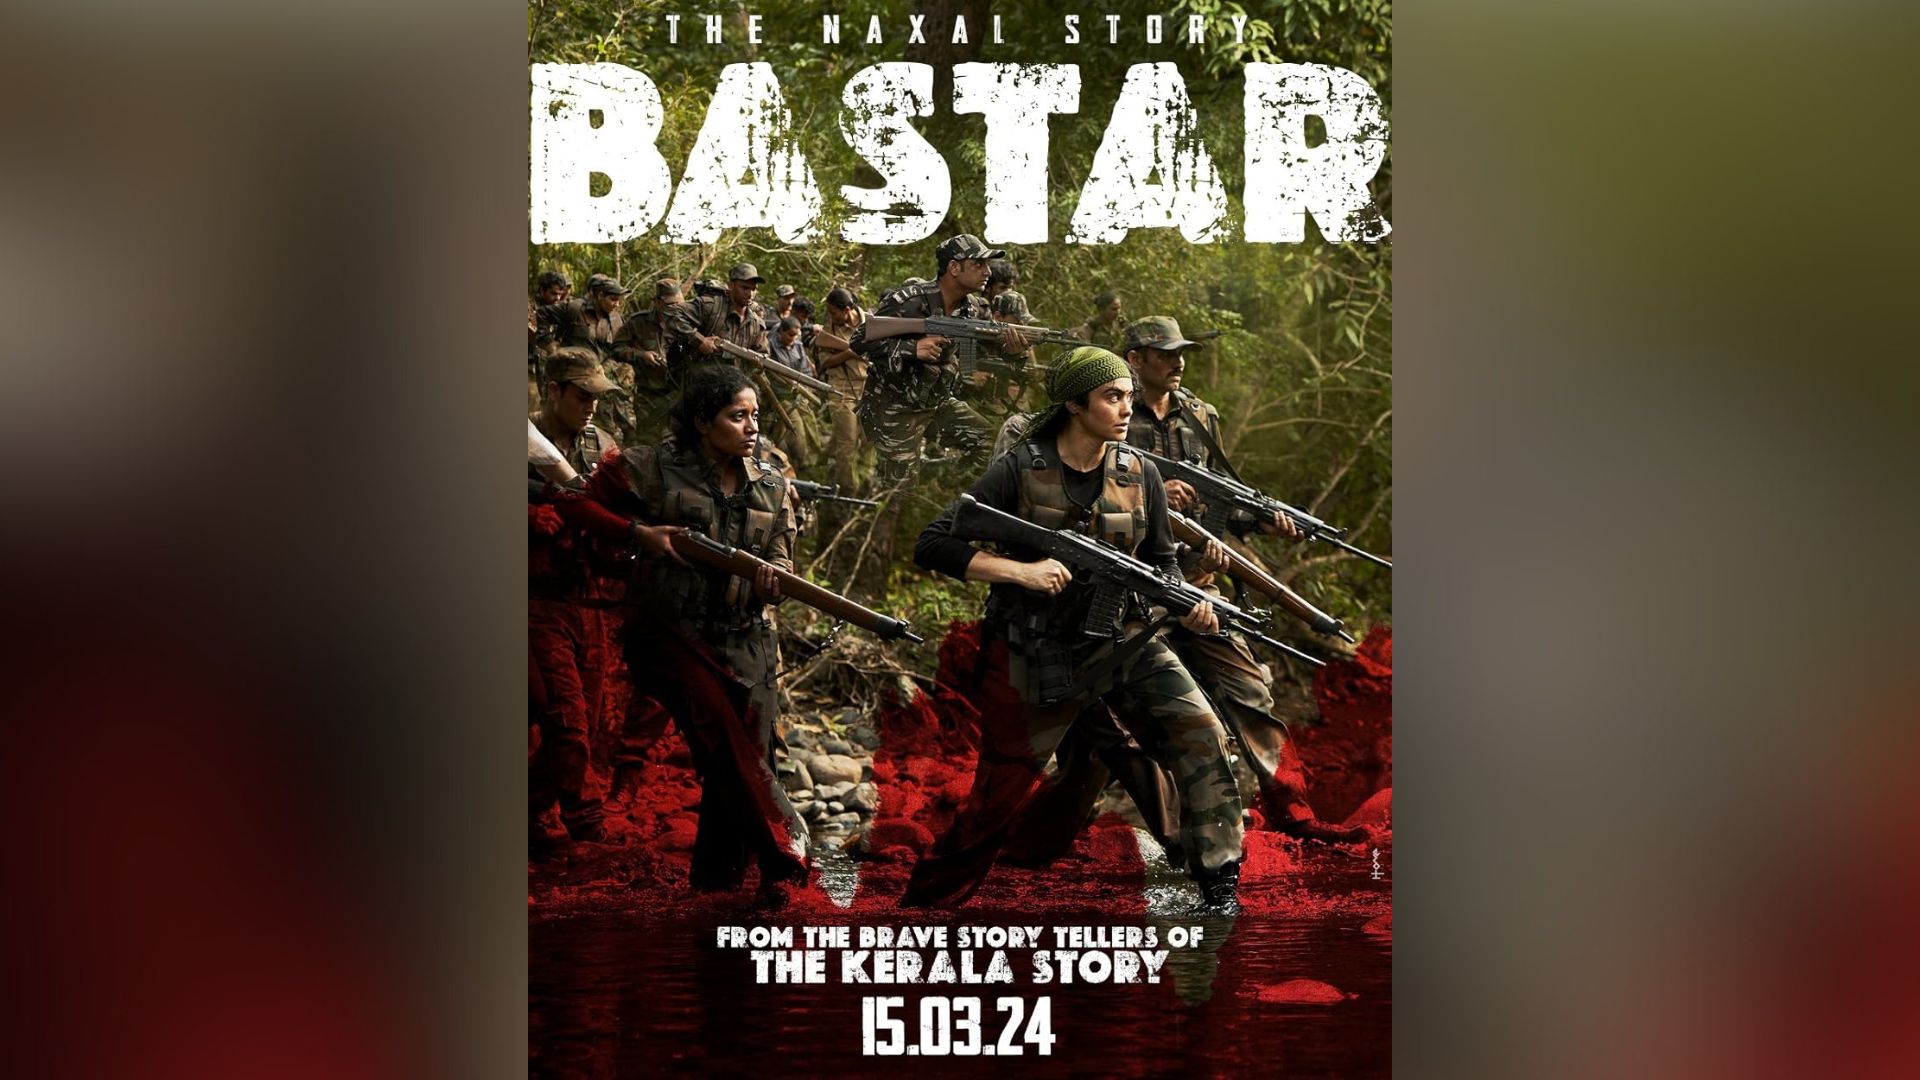 'Bastar: The Naxal Story' - Teaser Image